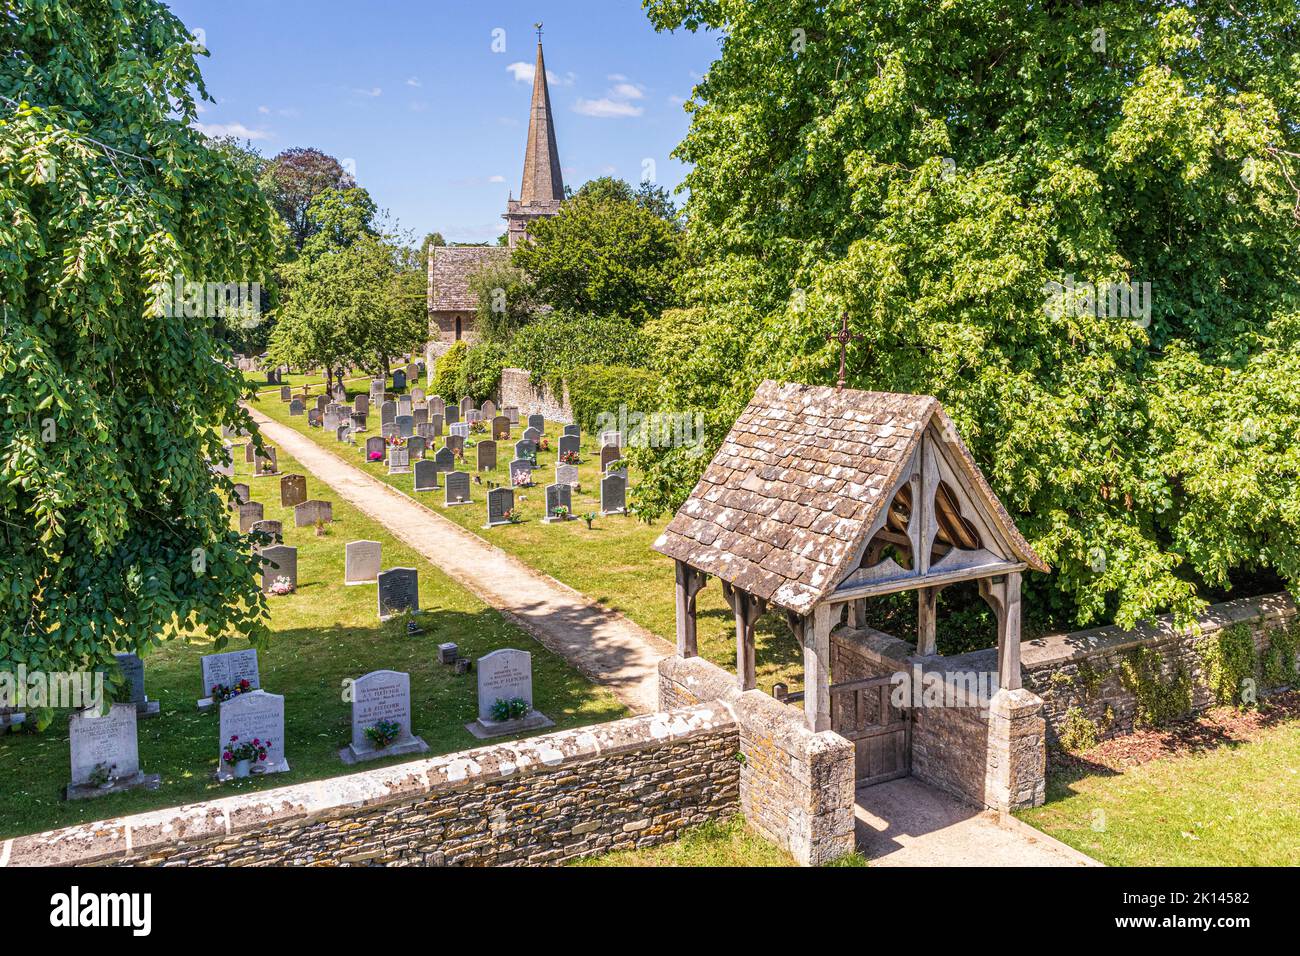 All Saints en el pueblo Cotswold de Down Ampney, Gloucestershire, Reino Unido. Ralph Vaughan Williams nació en el antiguo Vicarage en 1872 Foto de stock